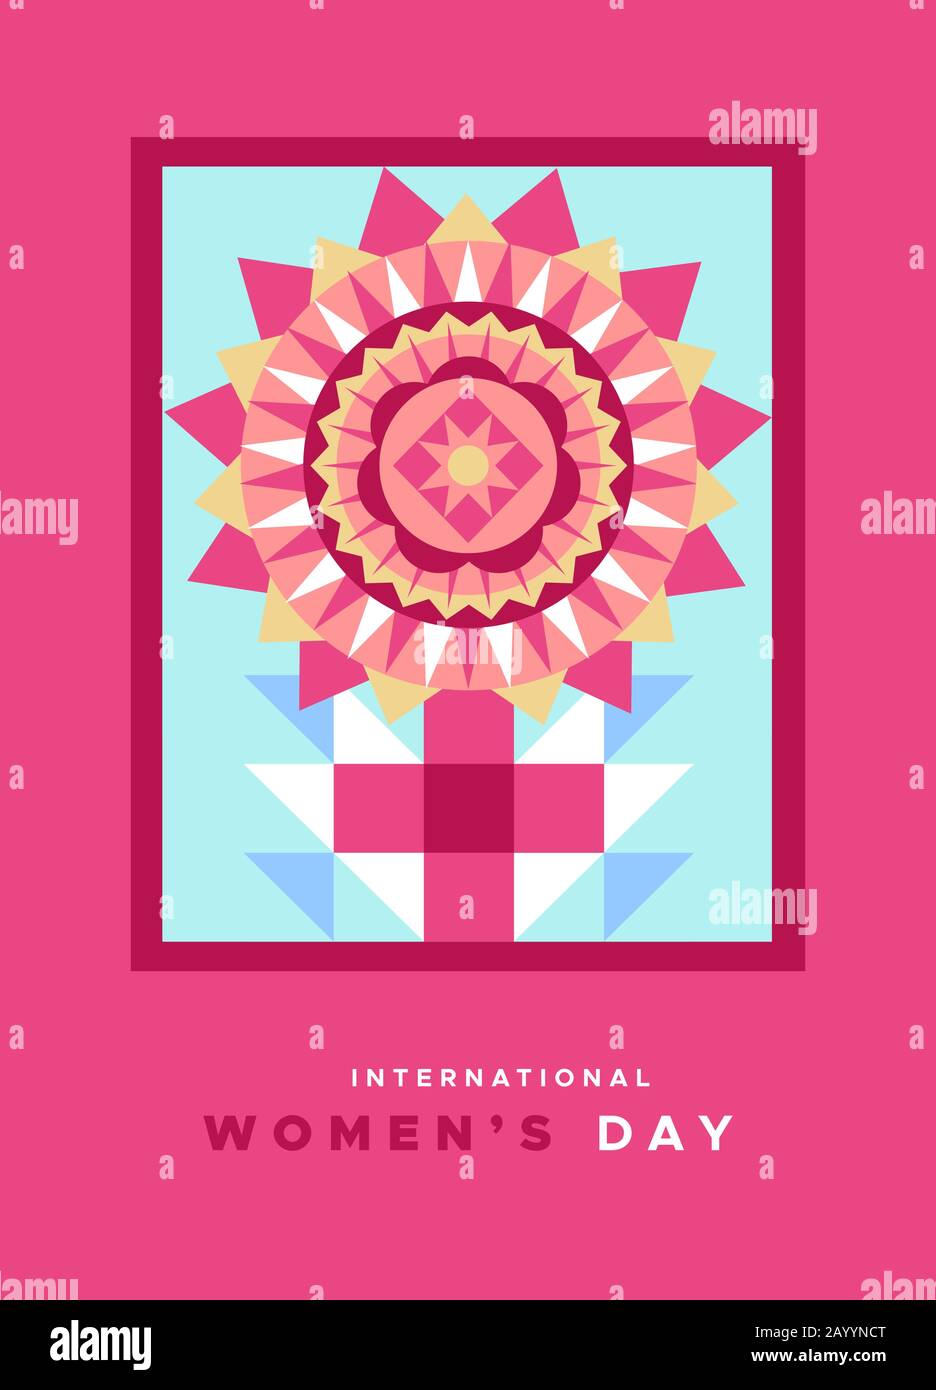 Carte de vœux internationale pour femmes illustration du symbole femelle rose dans un style géométrique abstrait. Signe femme fabriqué avec mosaïque plate FLO Illustration de Vecteur